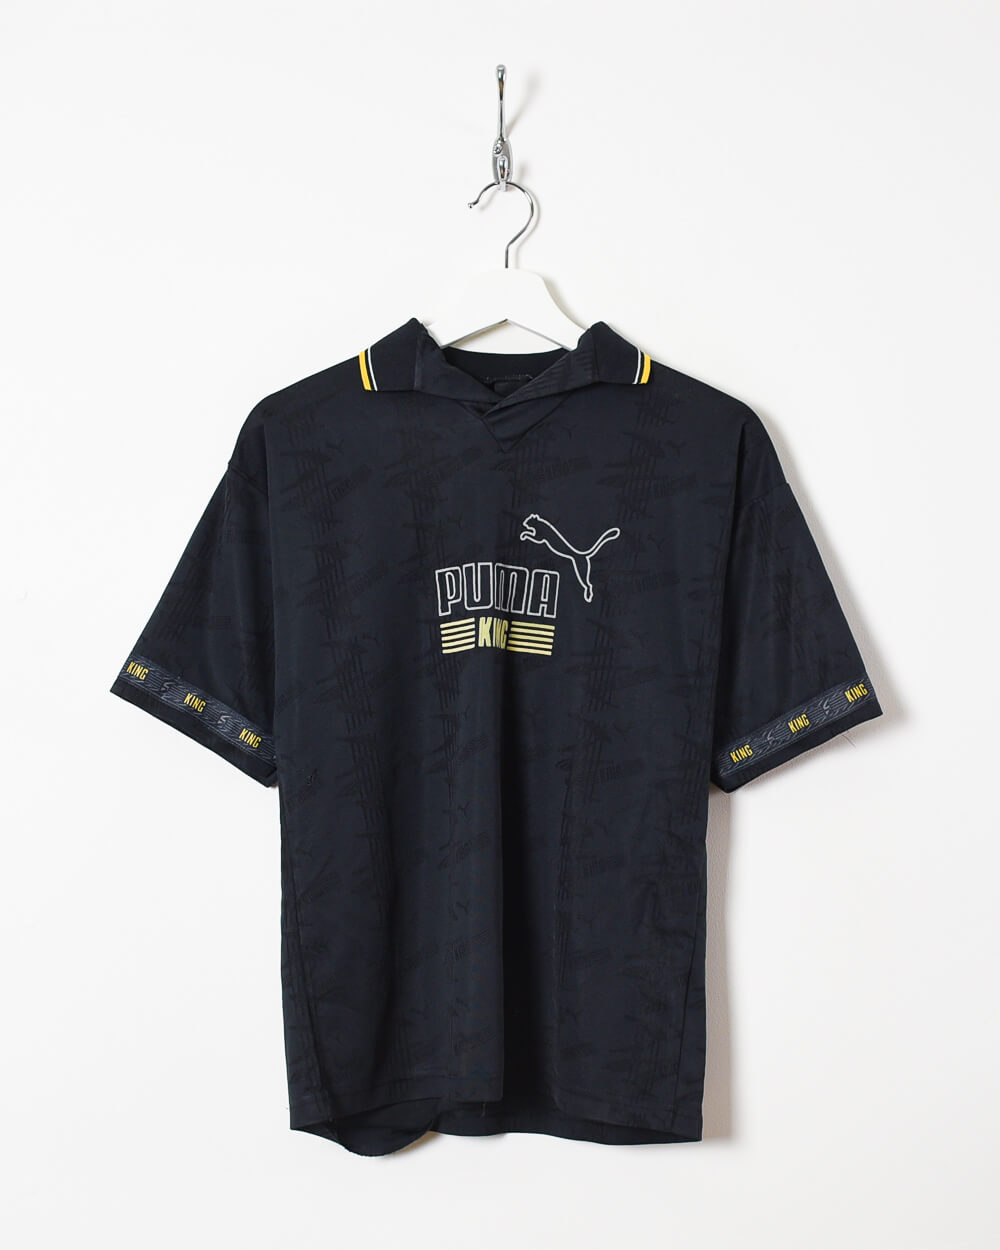 Black Puma King T-Shirt - X-Small